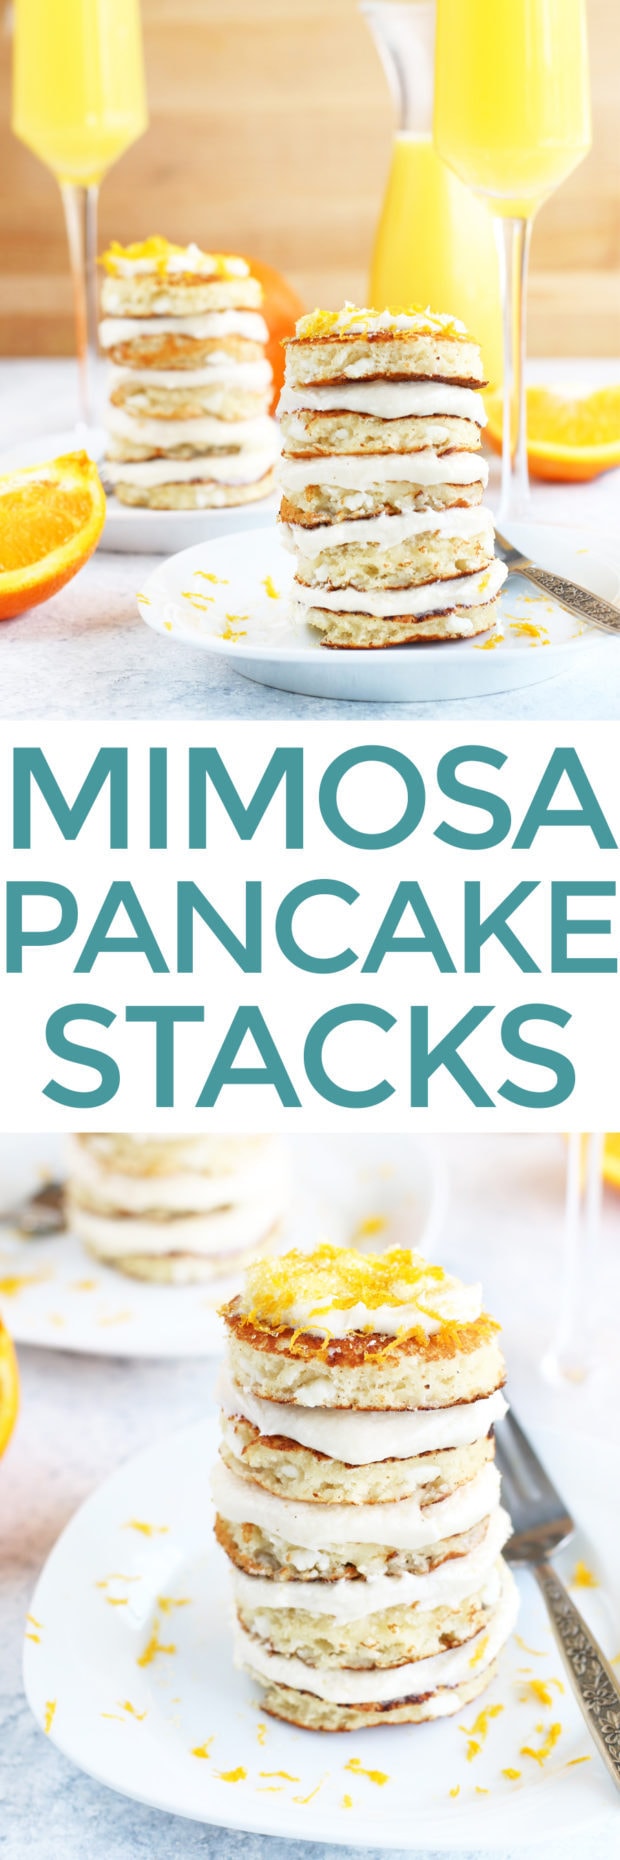 Mimosa Pancake Stacks